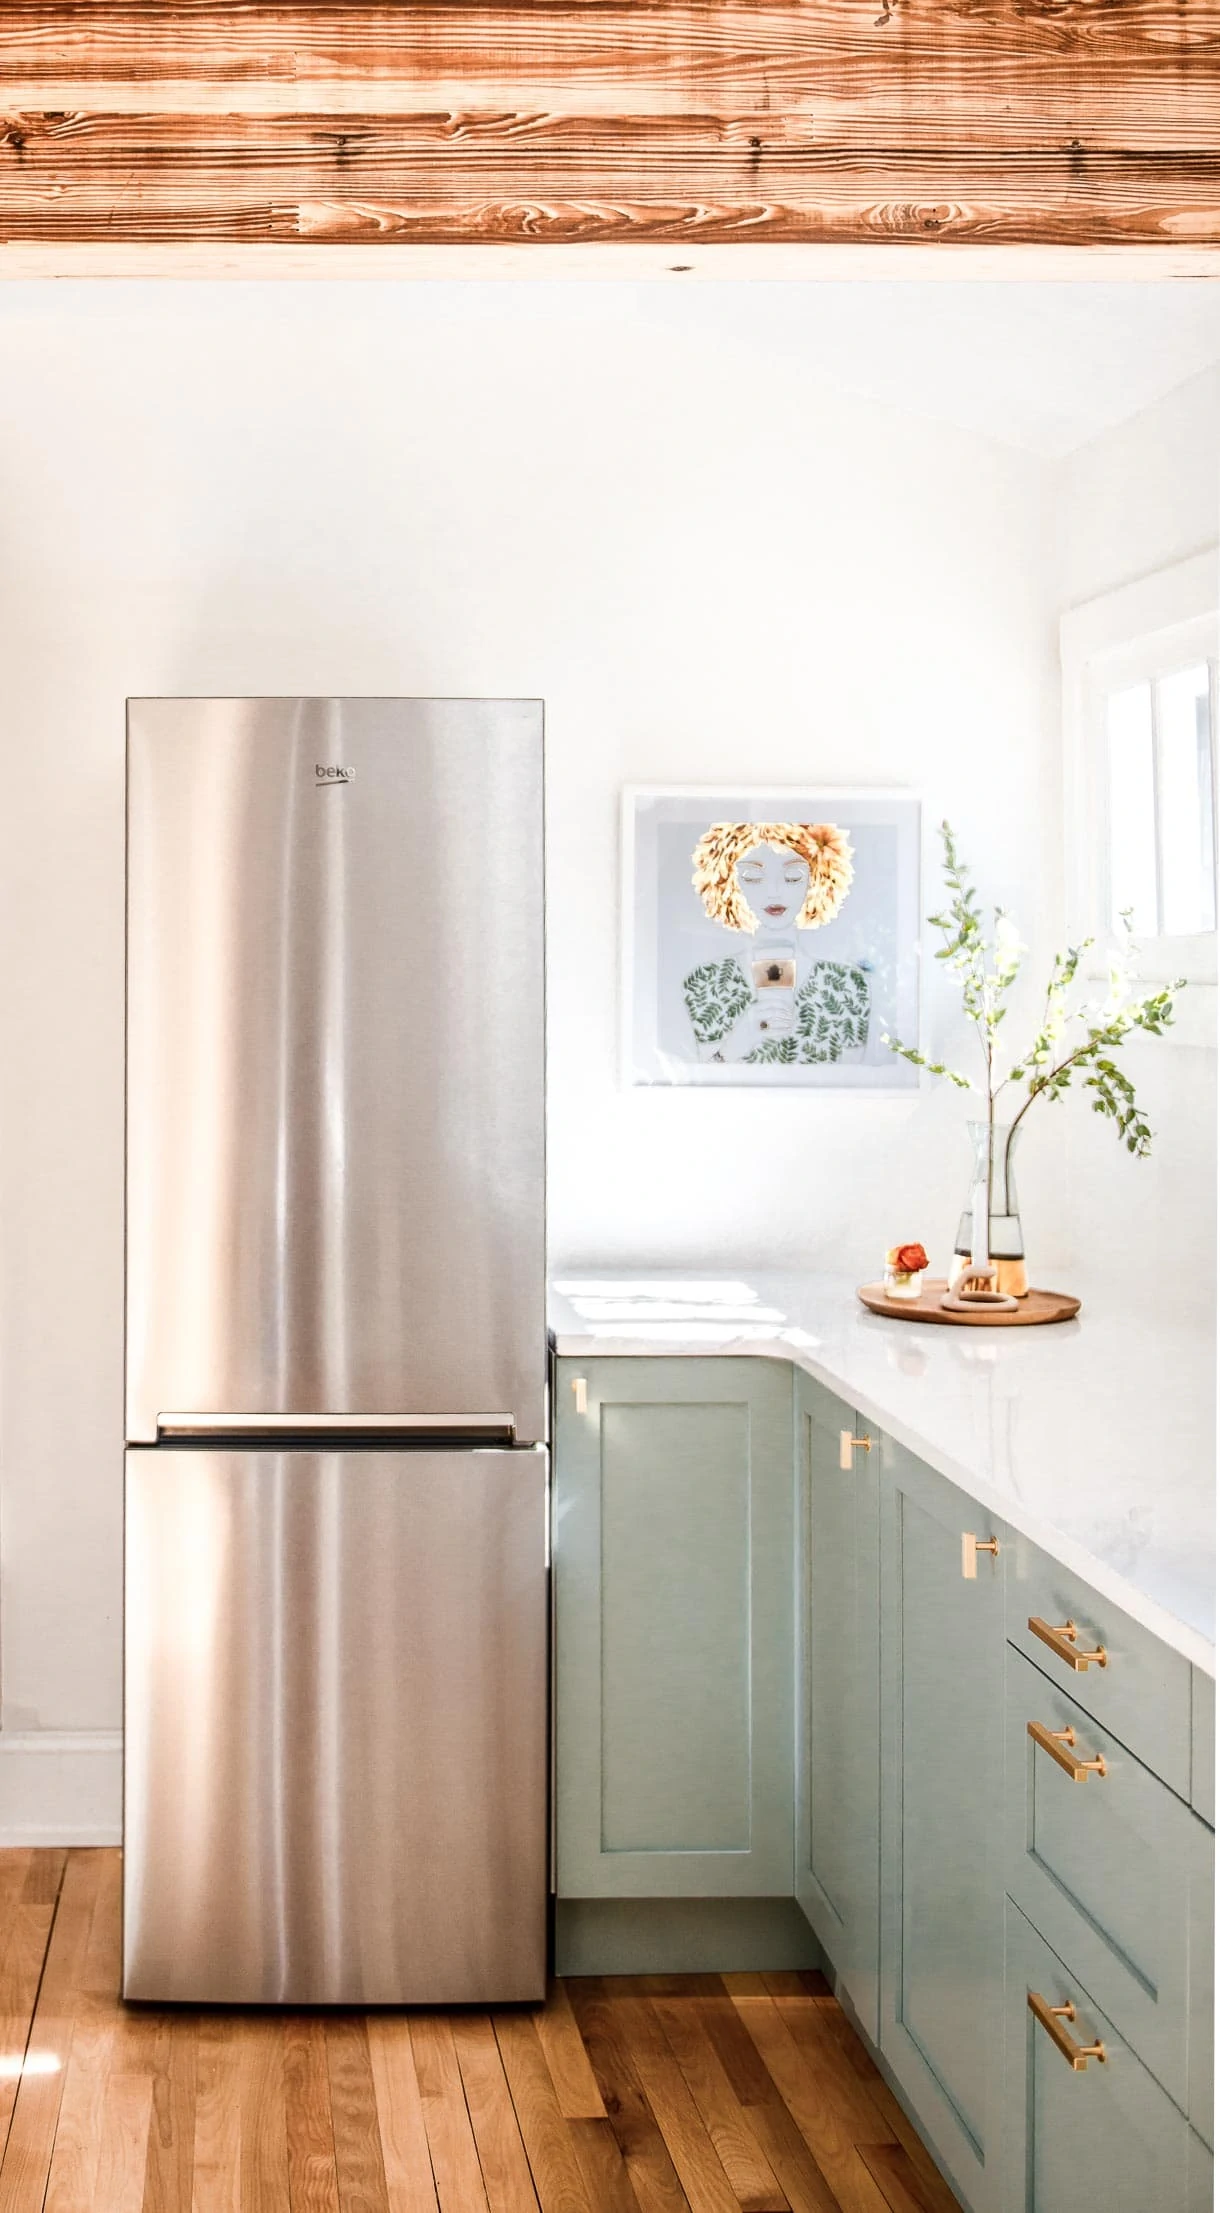 Beko 24 inch refrigerator in kitchen renovation